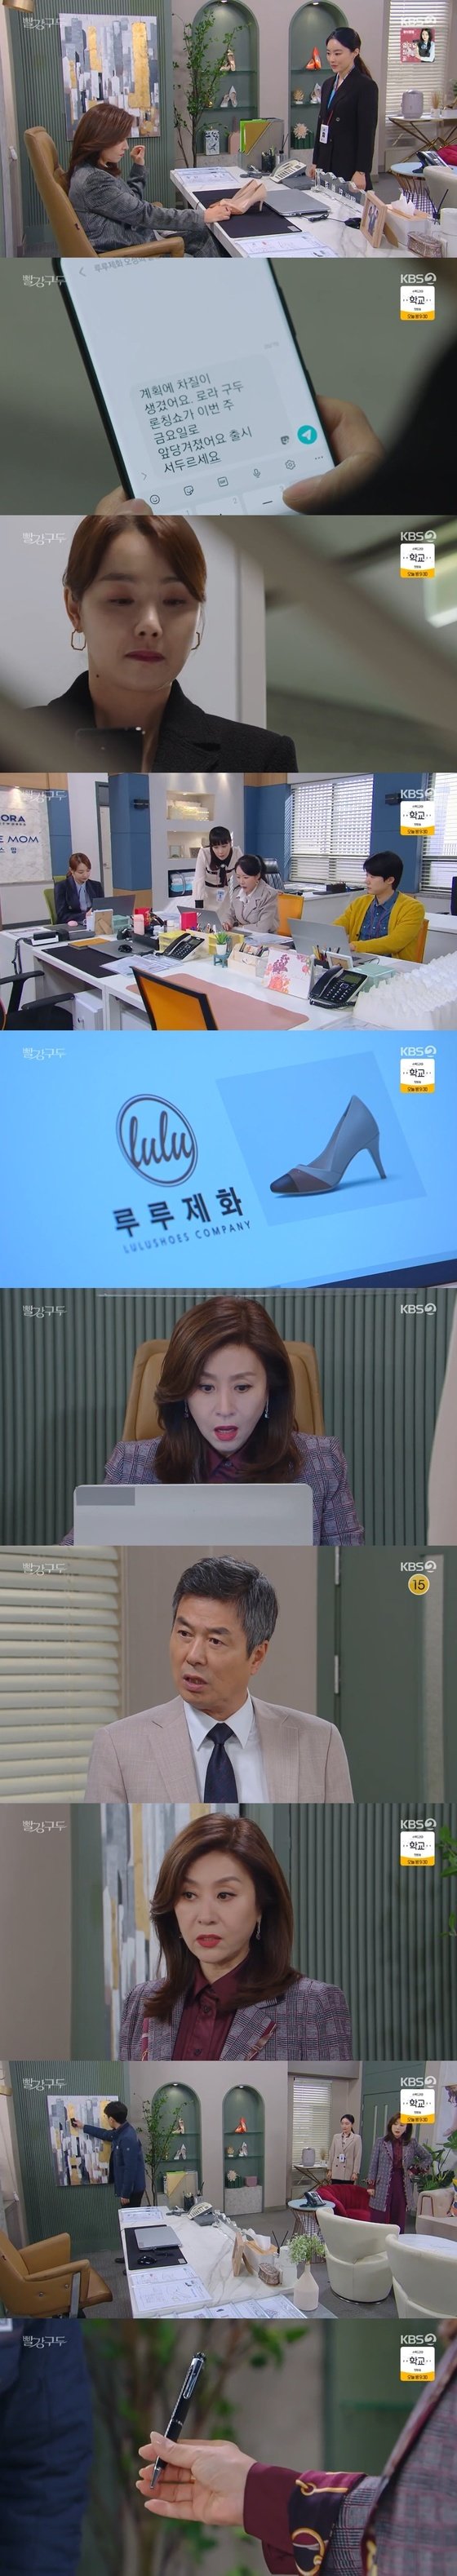 '빨강 구두' 최명길, 디자인 유출에 분노...소이현·선우재덕 반응은?(사진=KBS2)